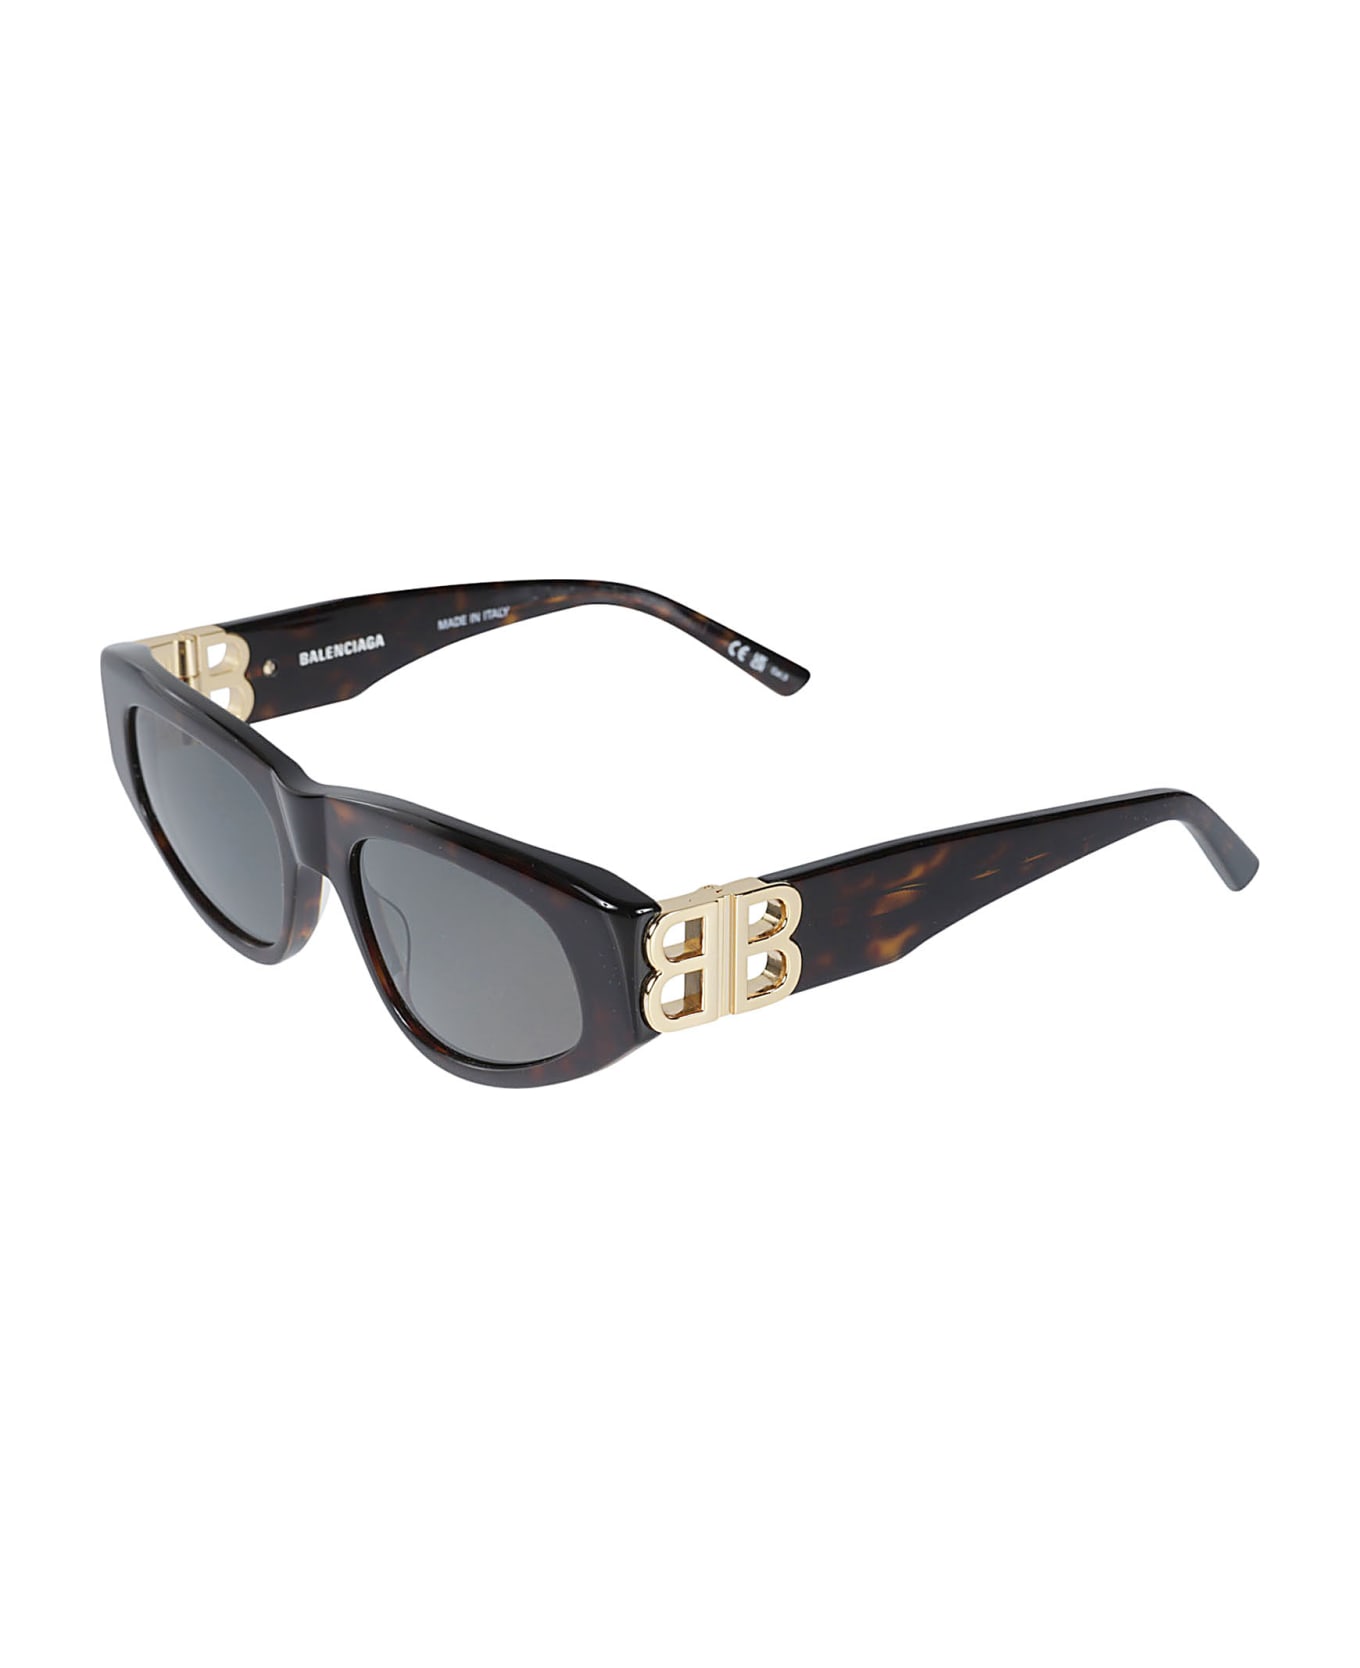 Balenciaga Eyewear One-size Sunglasses - Havana/Gold/Green